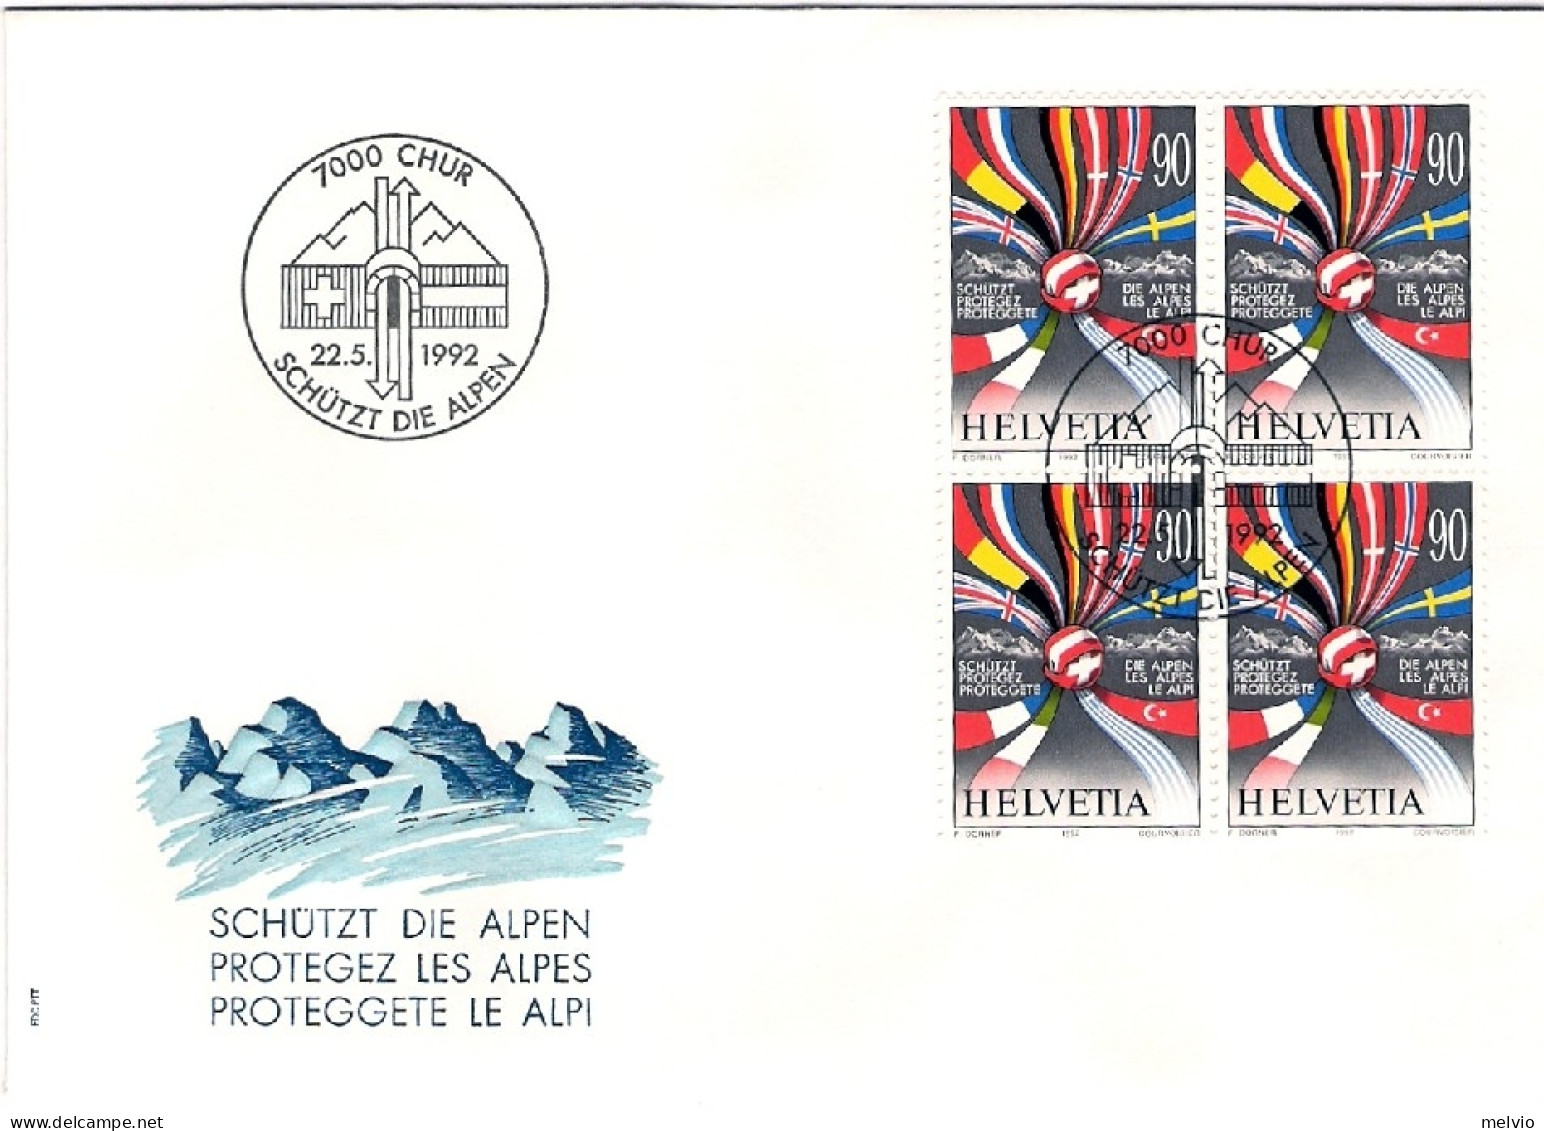 1974-Svizzera Quartina S.1v."8 Centenario Della Citta' Di Berna"su Fdc Illustrat - FDC